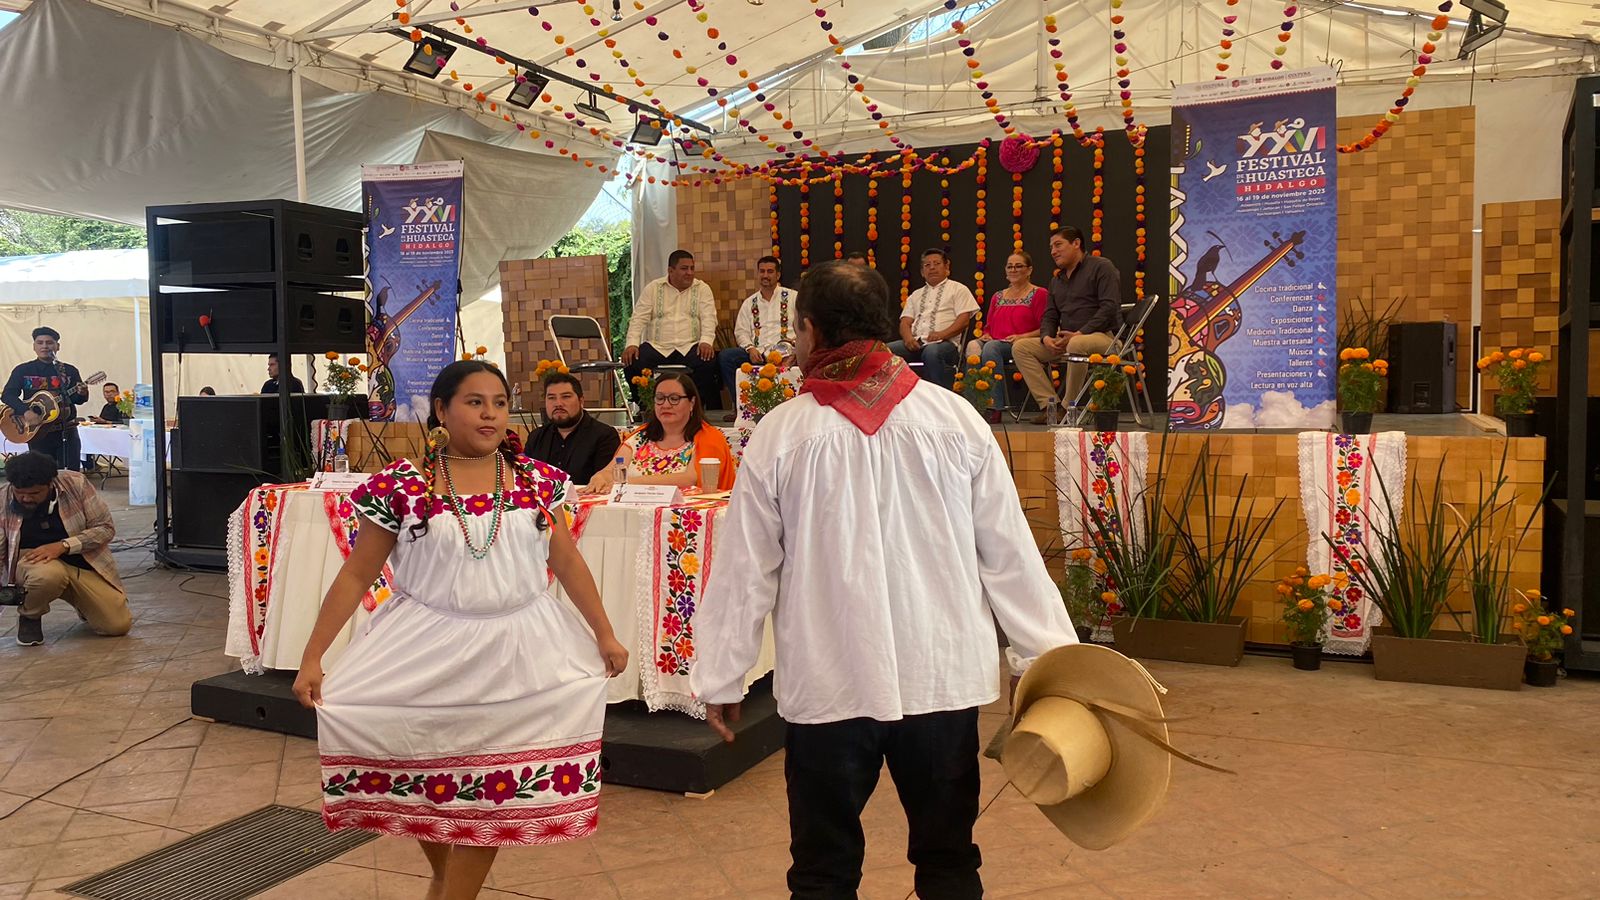 Festival de la Huasteca